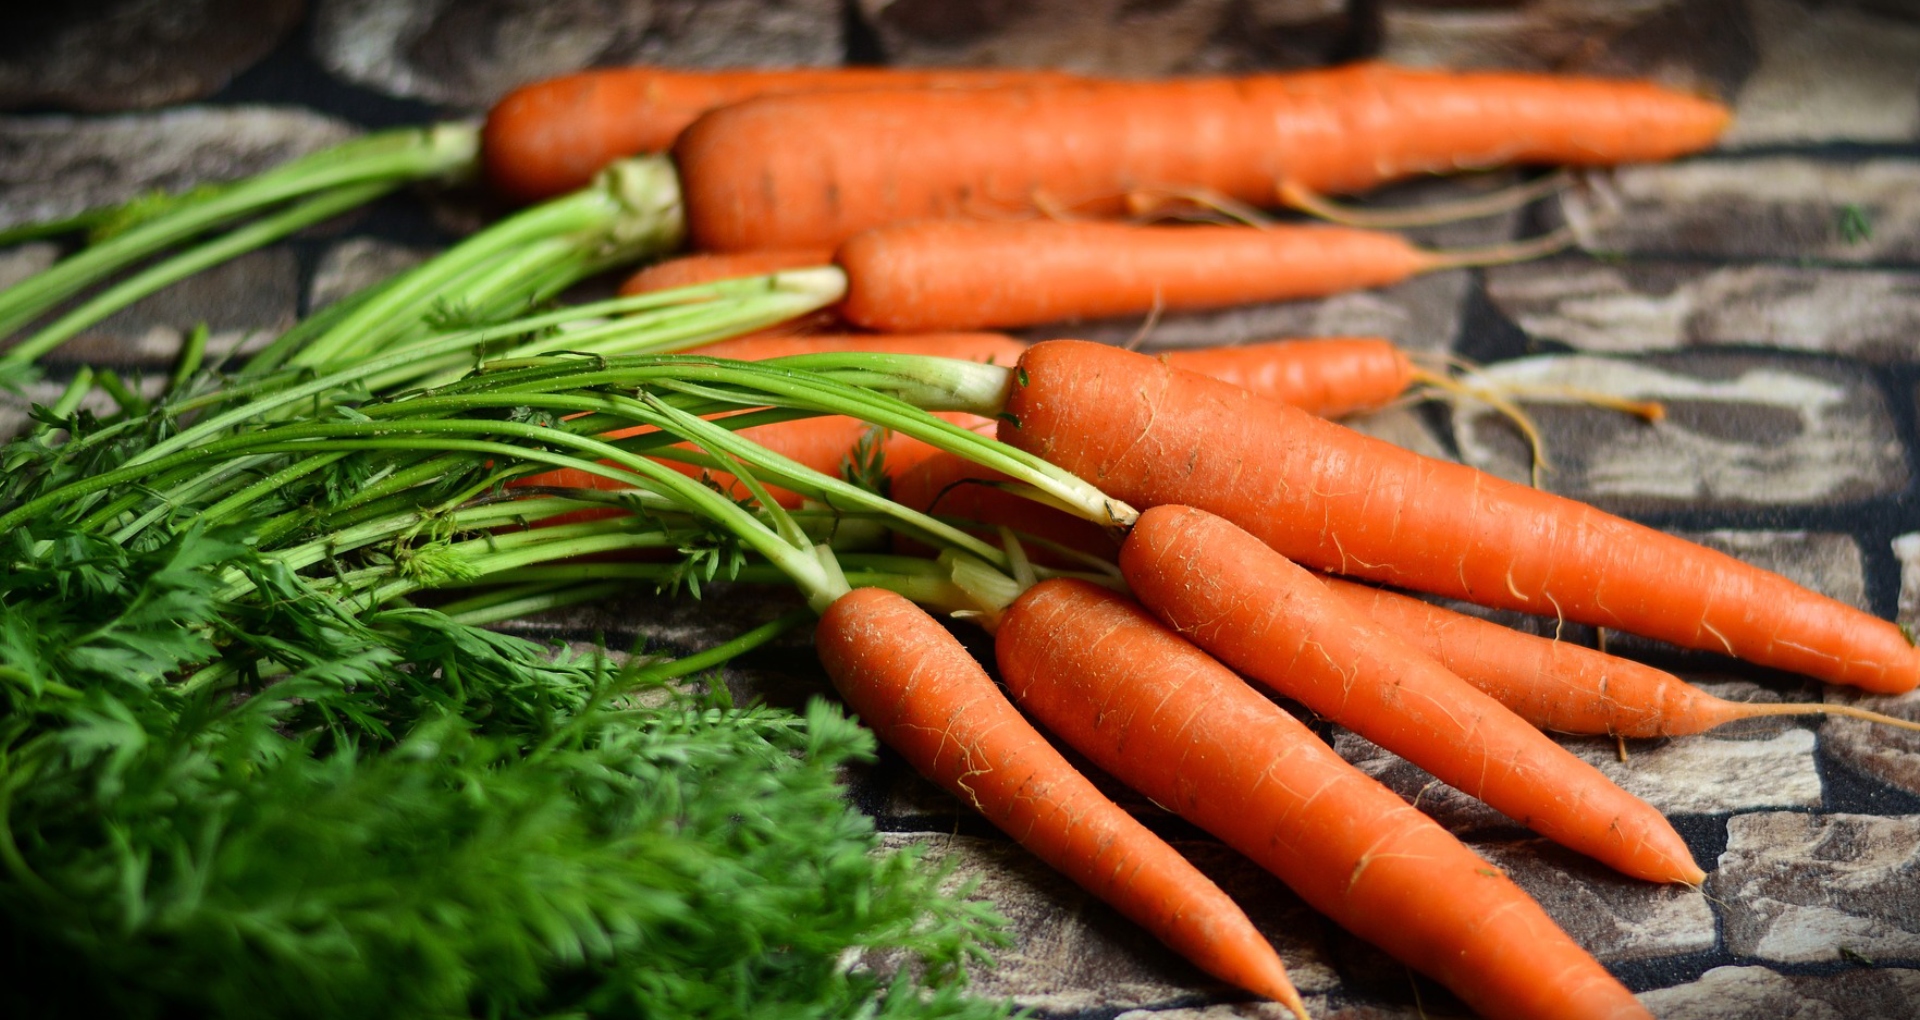 कैंसर से लेकर हाई ब्लड प्रेशर तक, गाजर खाने से मिलती है कई गंभीर बीमारियों से छुटकारा, जानिए इसके फायदे